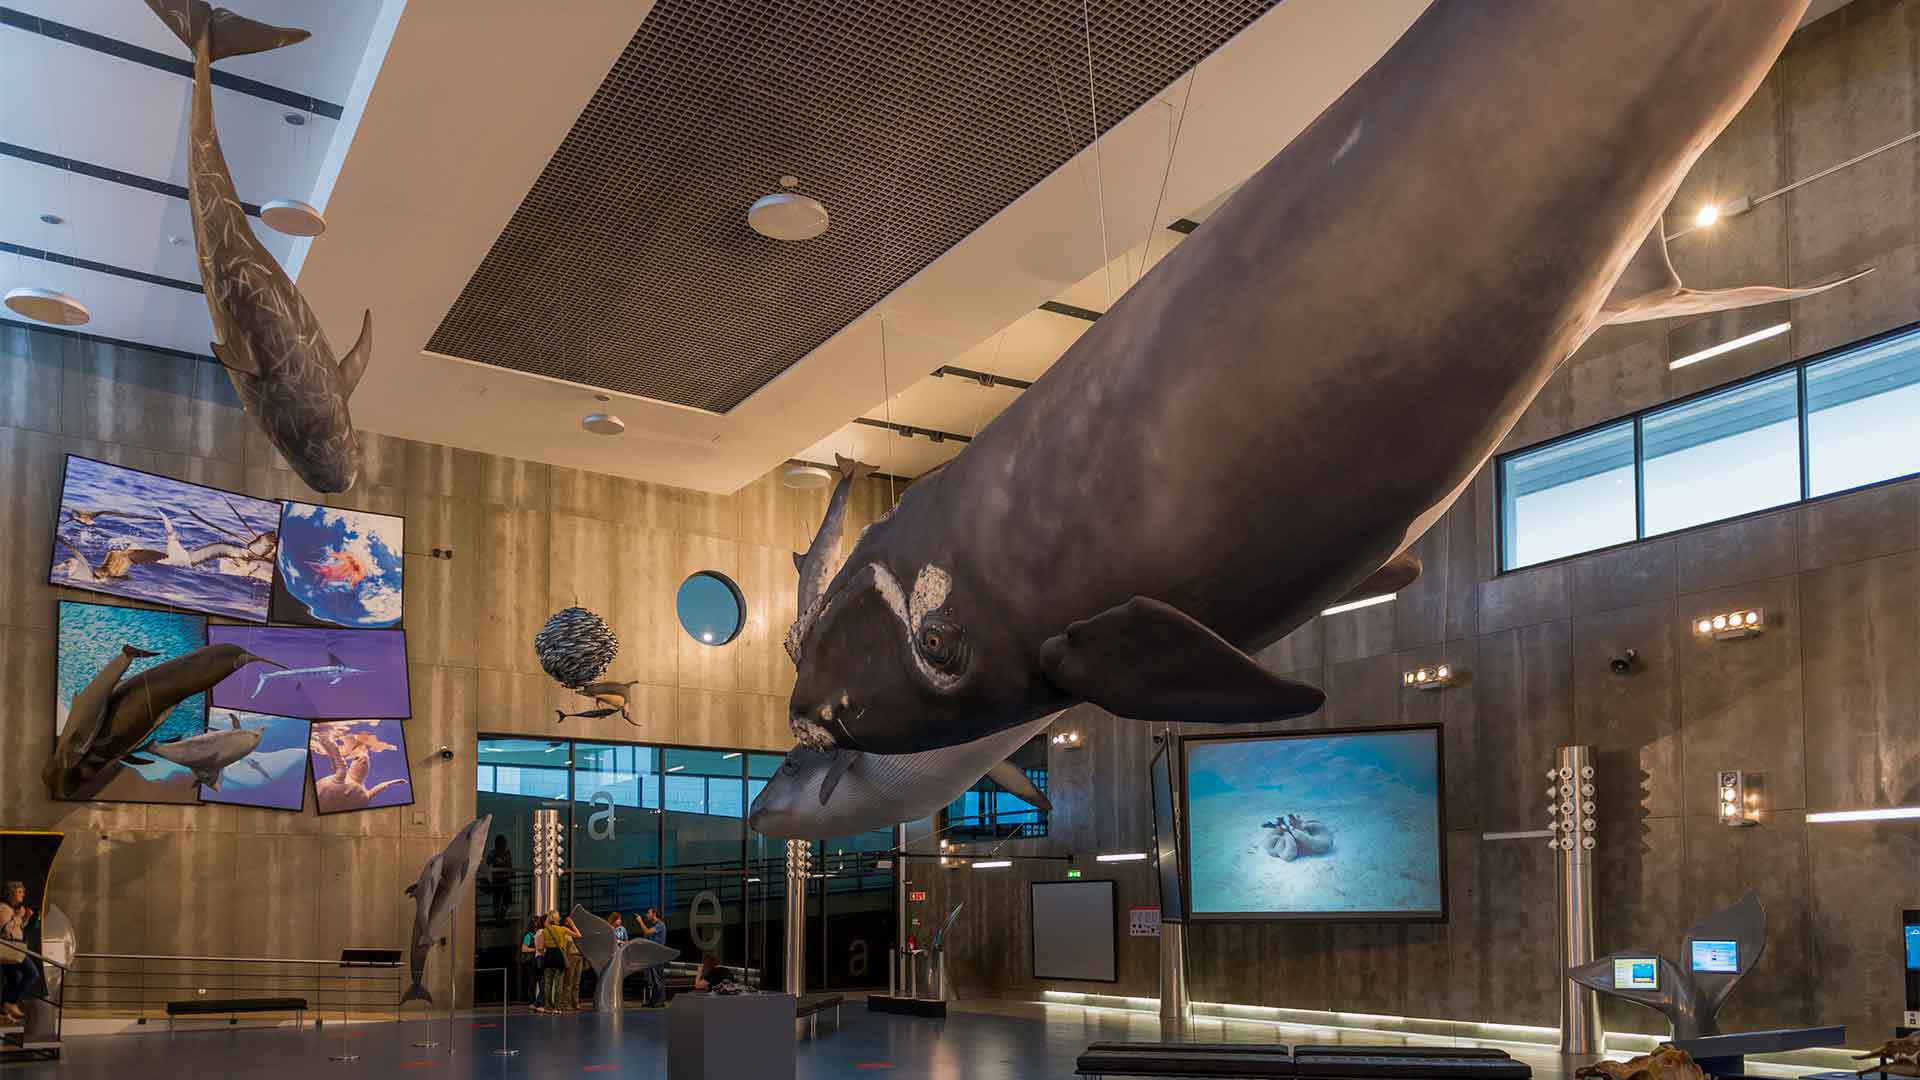 Museu da baleia 6